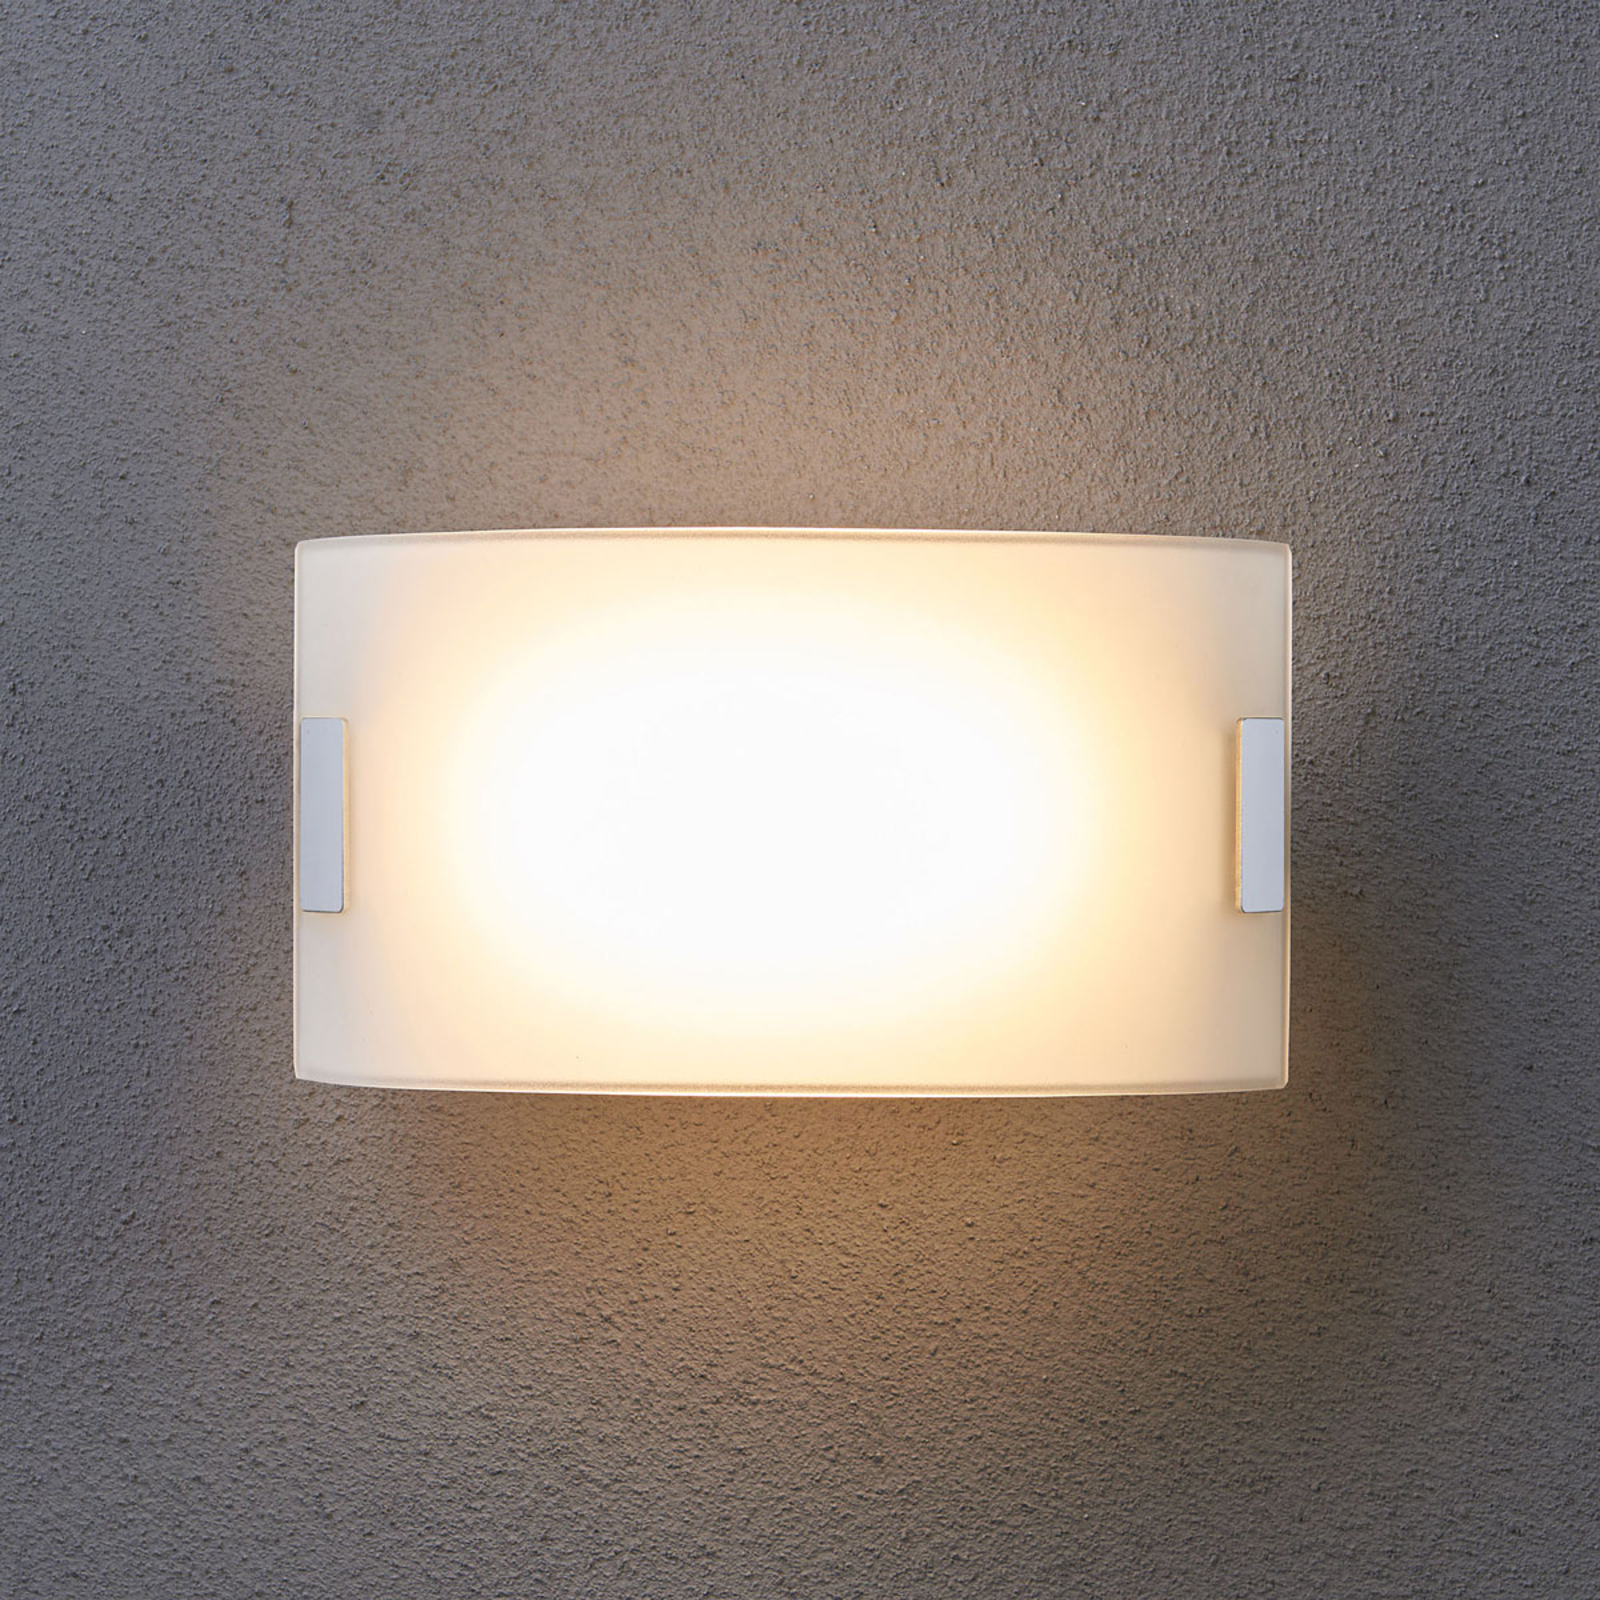 Biele sklenené nástenné svetlo Gisela LED osadenie